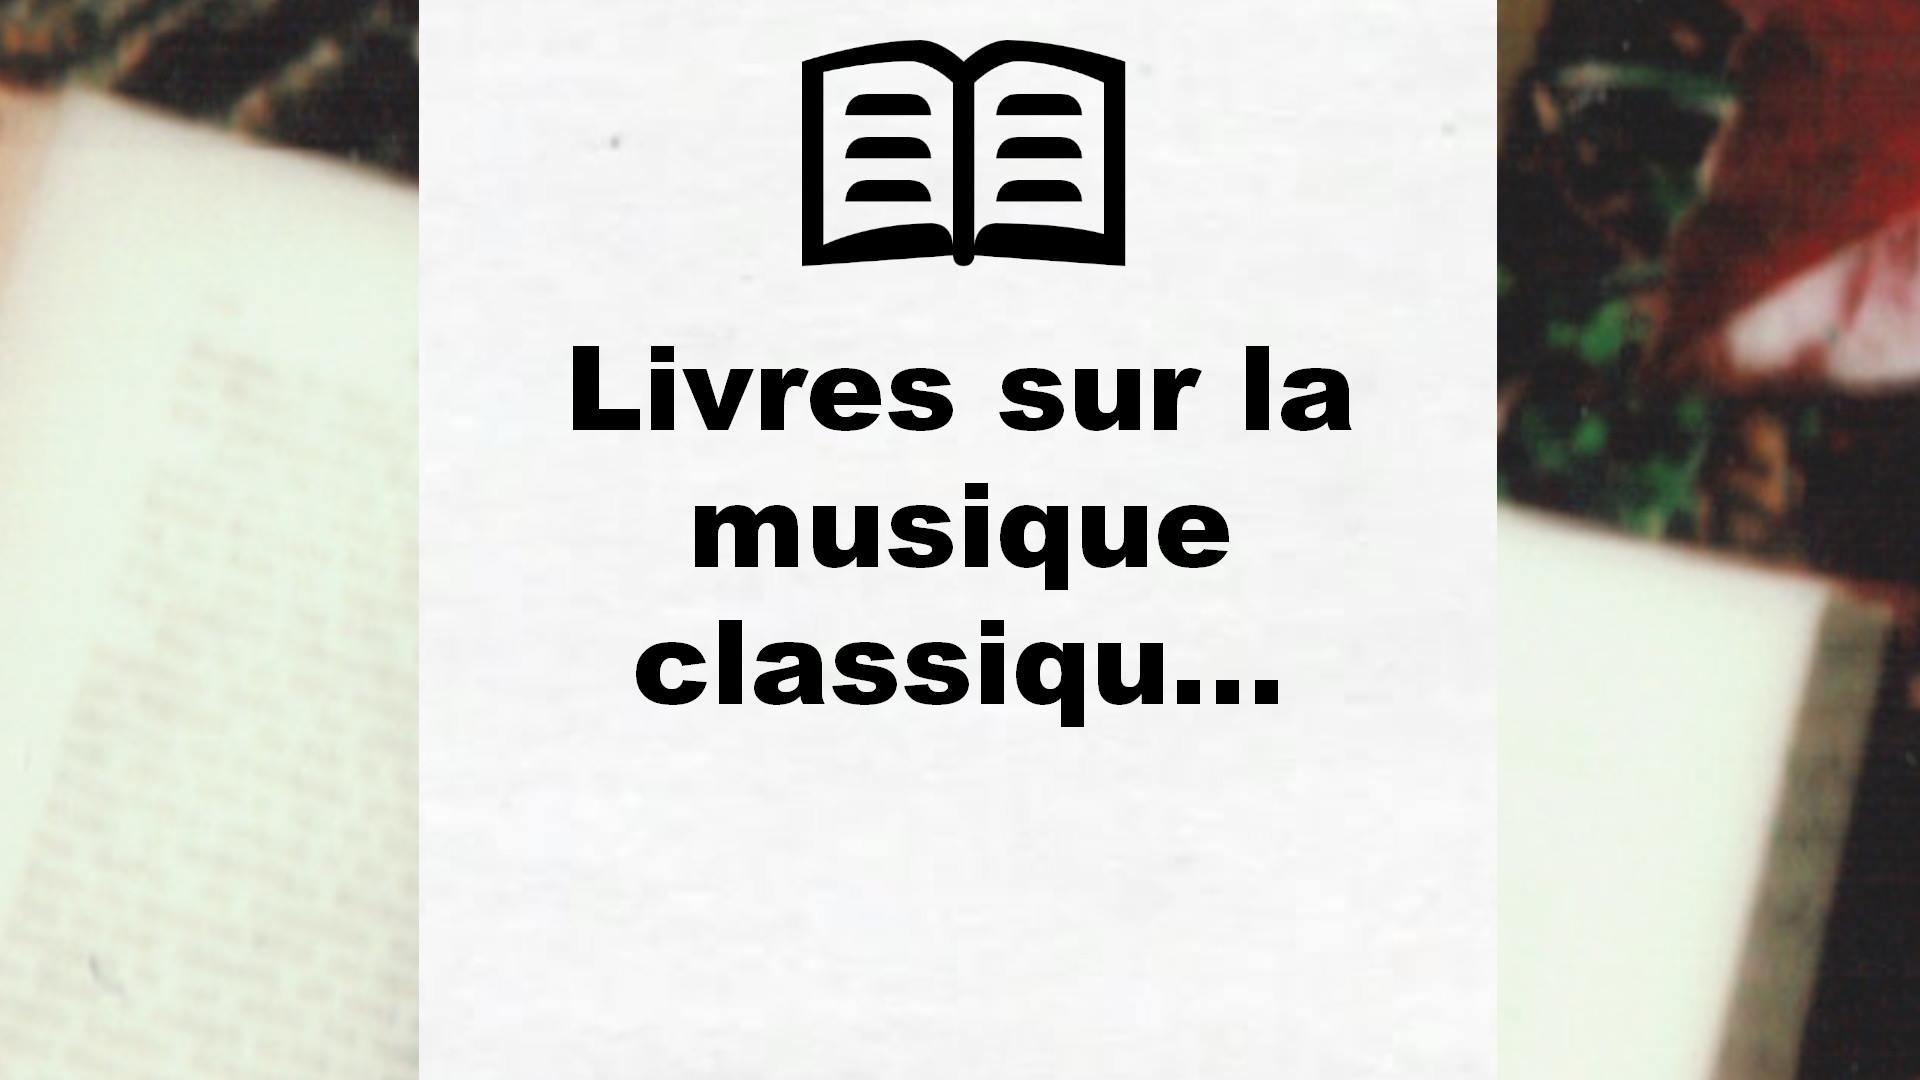 Livres sur la musique classique